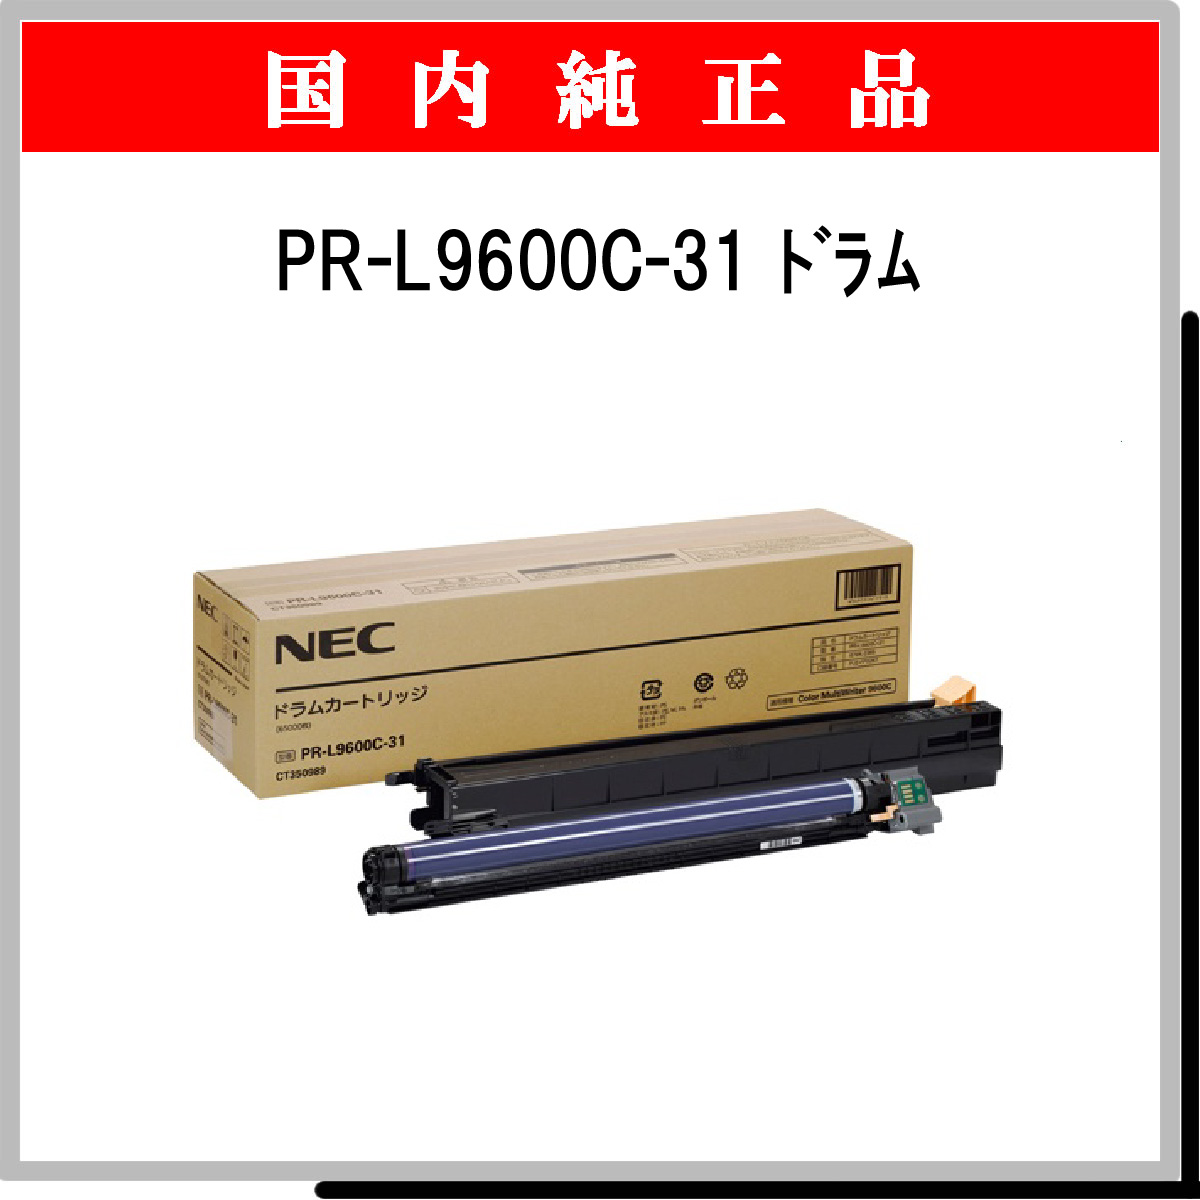 売れ筋新商品 NEC ドラムカートリッジ PR-L9700C-31